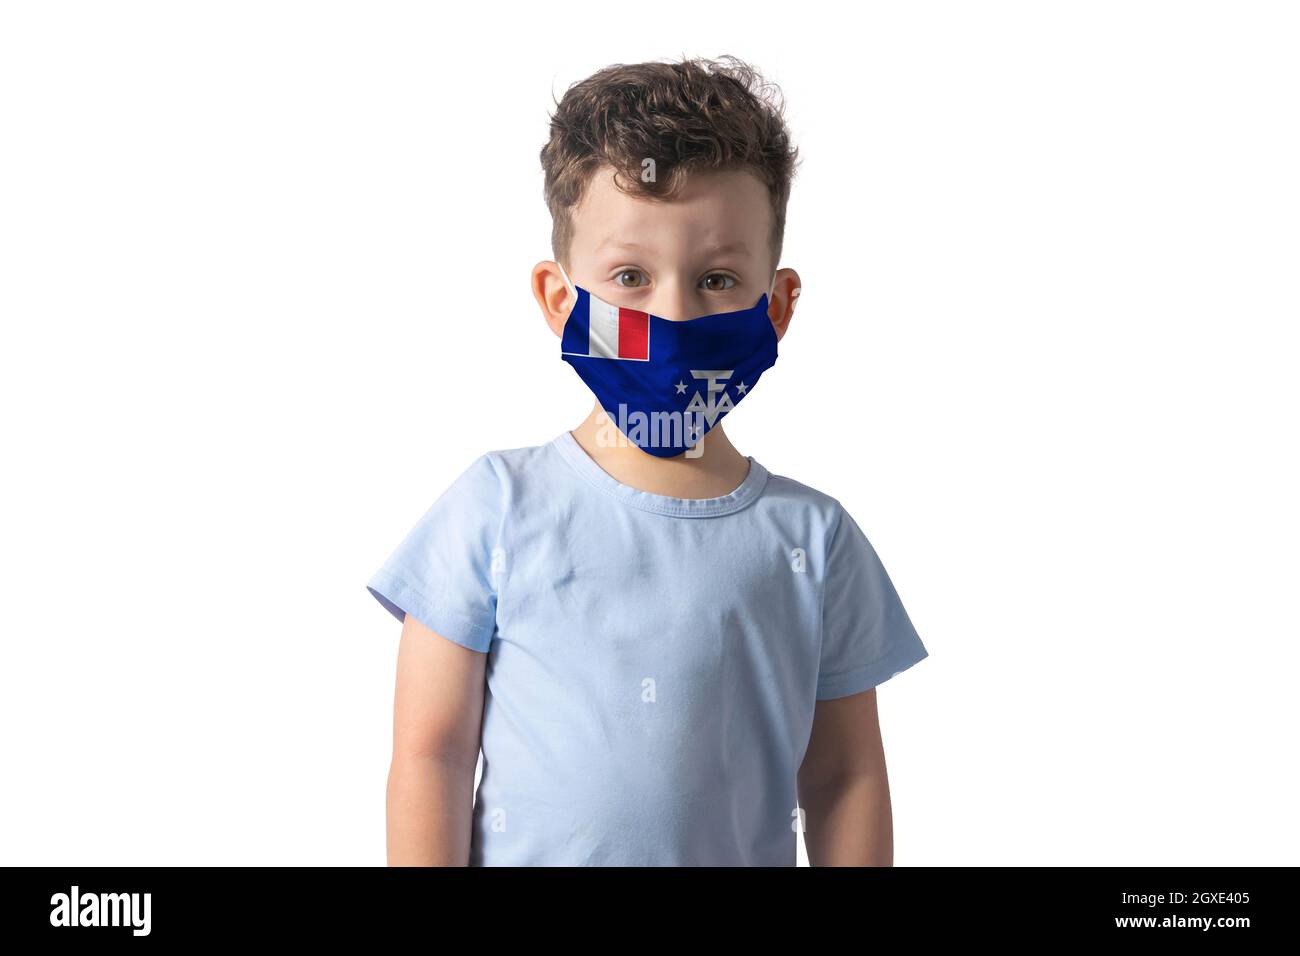 Atemschutzmaske mit Flagge der Association of Southeast Asian Nations. Weißer Junge setzt auf medizinische Gesichtsmaske isoliert auf weißem Hintergrund. Stockfoto